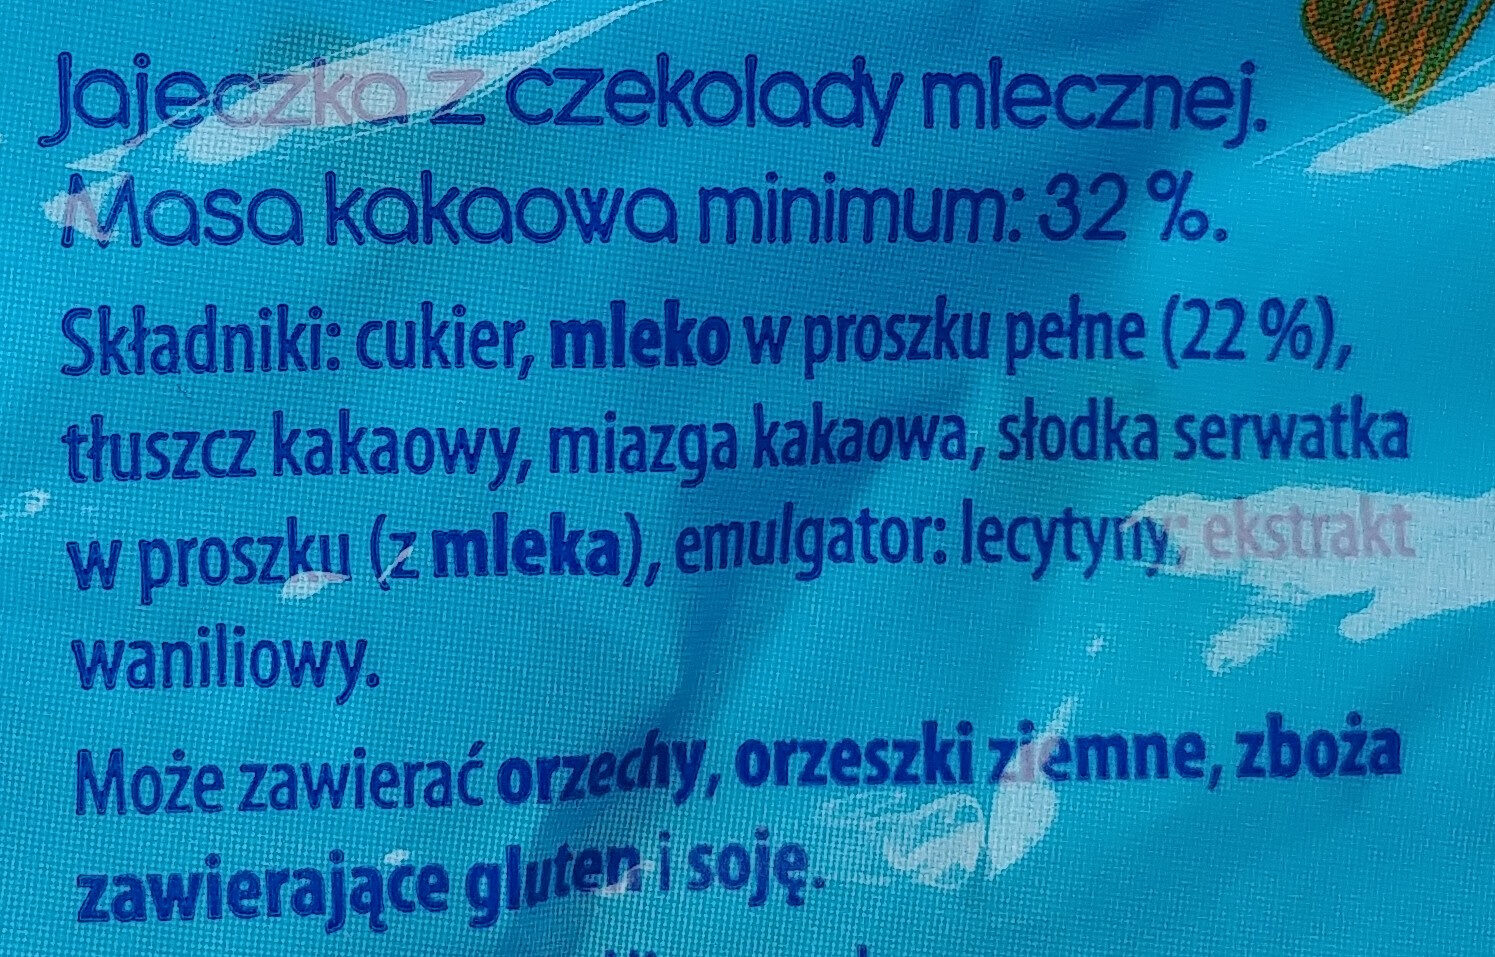 Jajeczka z czekolady mlecznej - Ingredients - pl